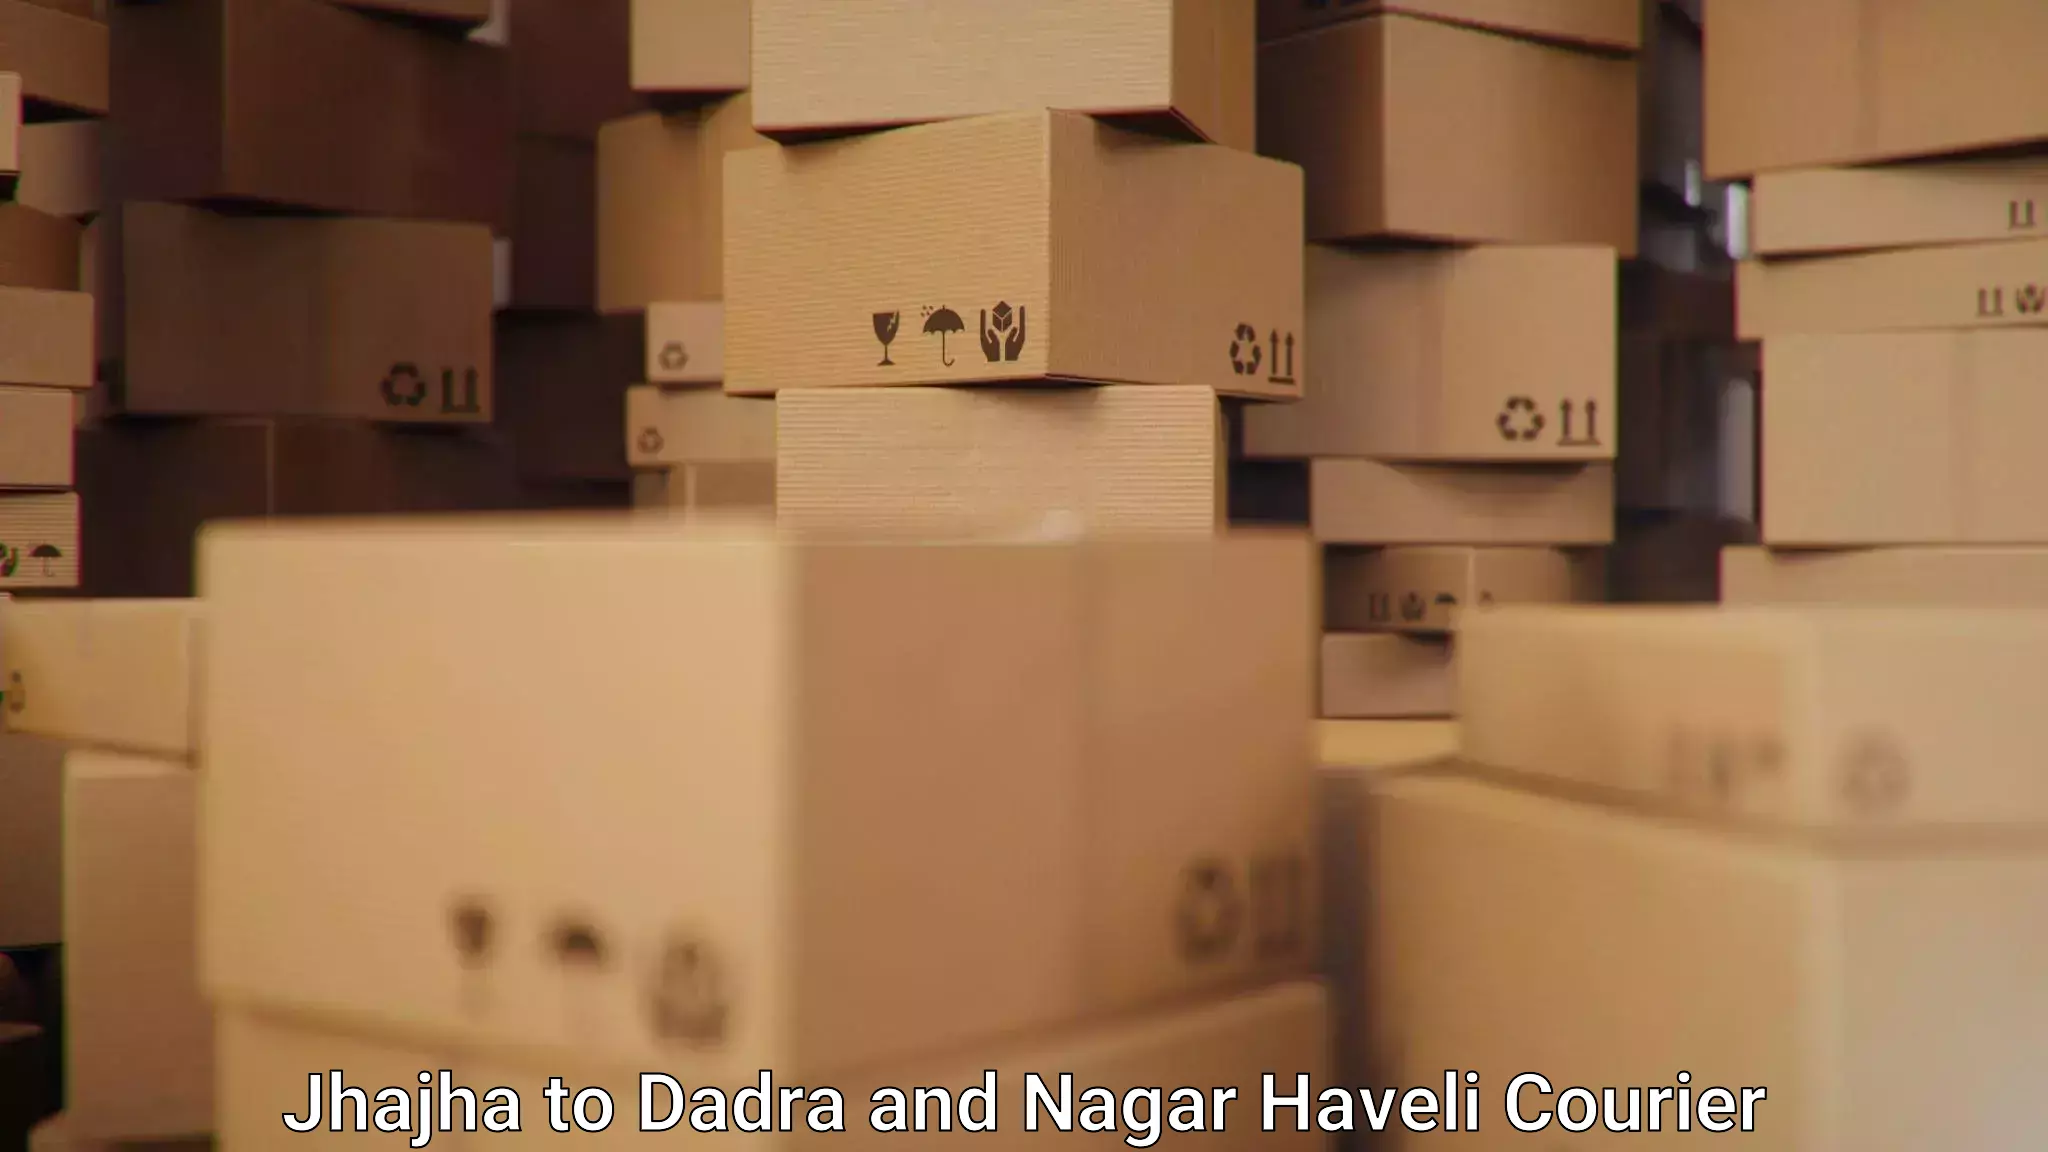 Efficient shipping operations Jhajha to Dadra and Nagar Haveli